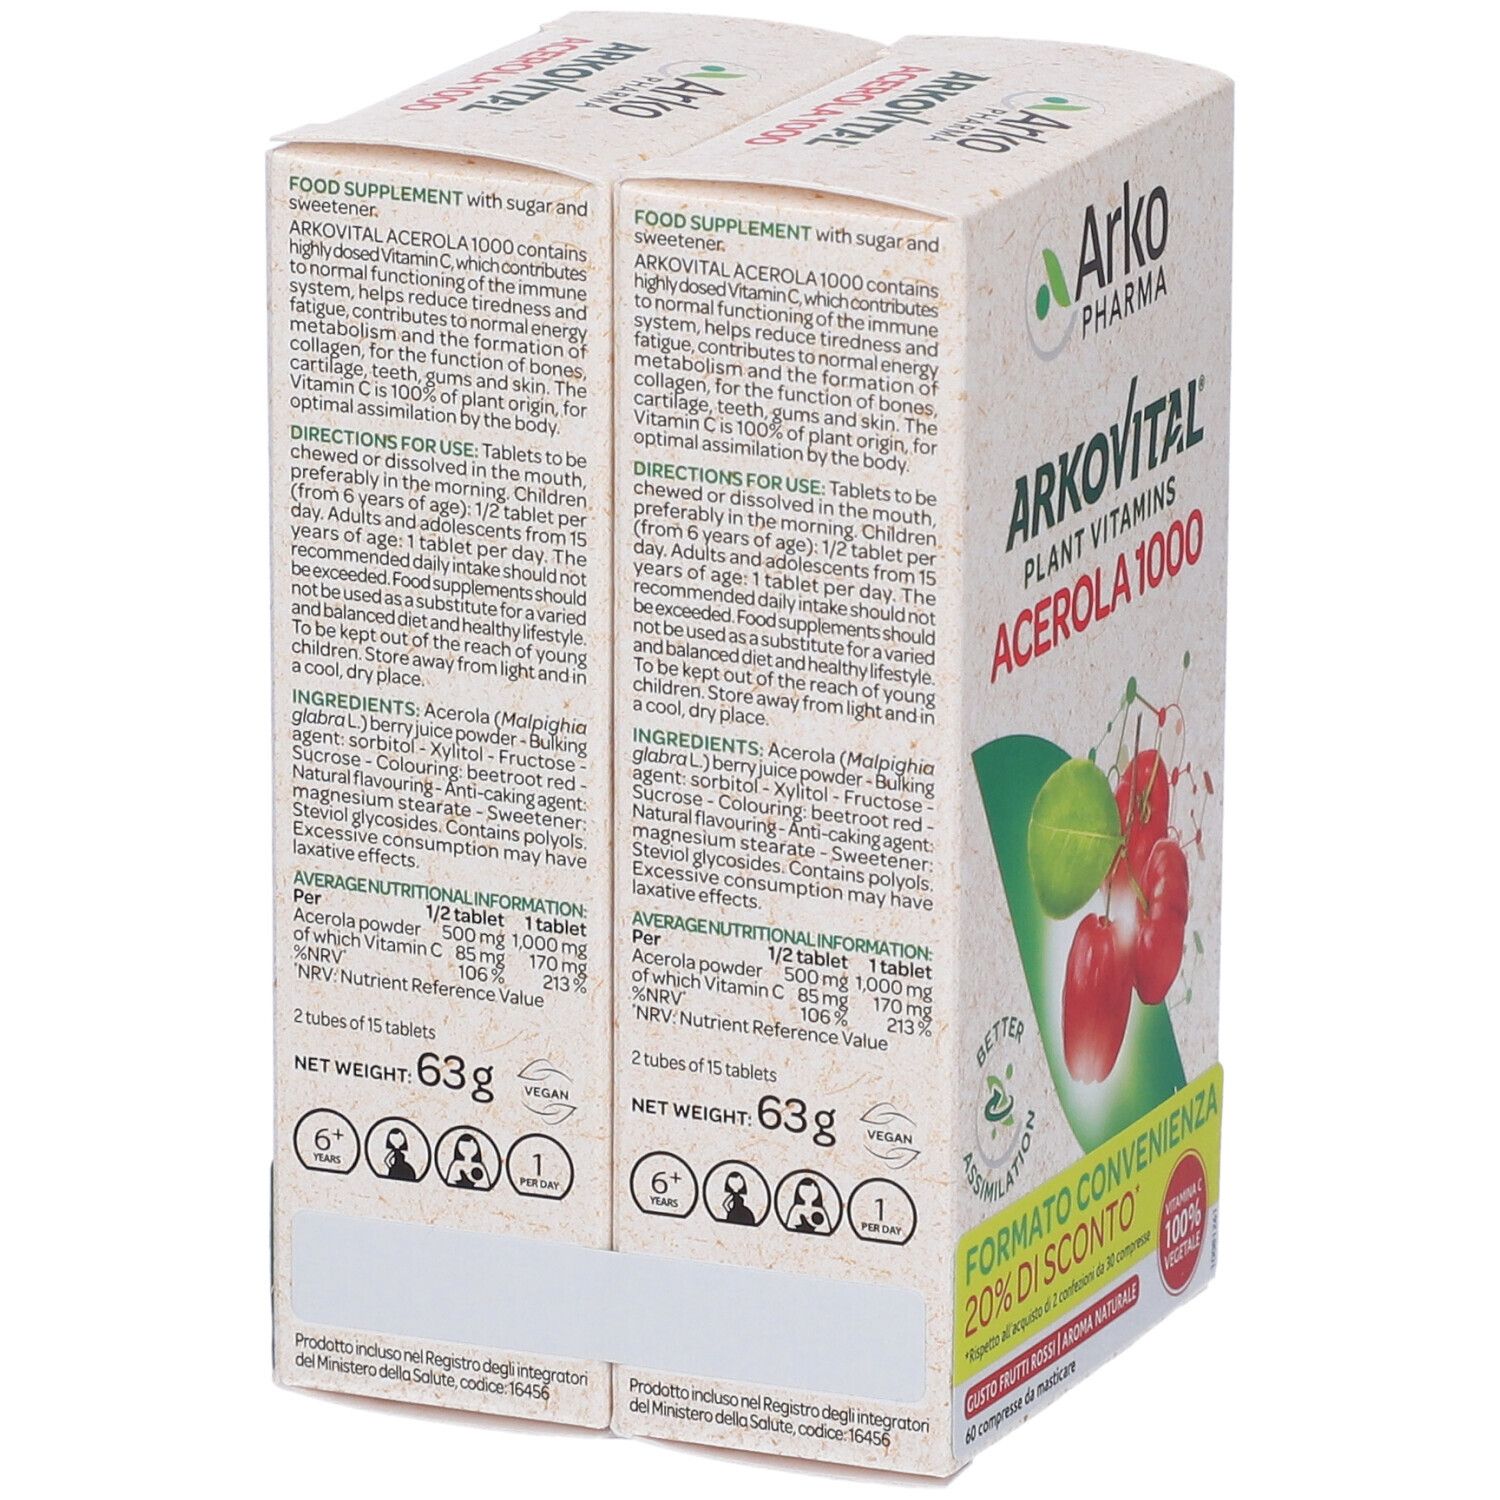 Arkovital® Acerola 1000